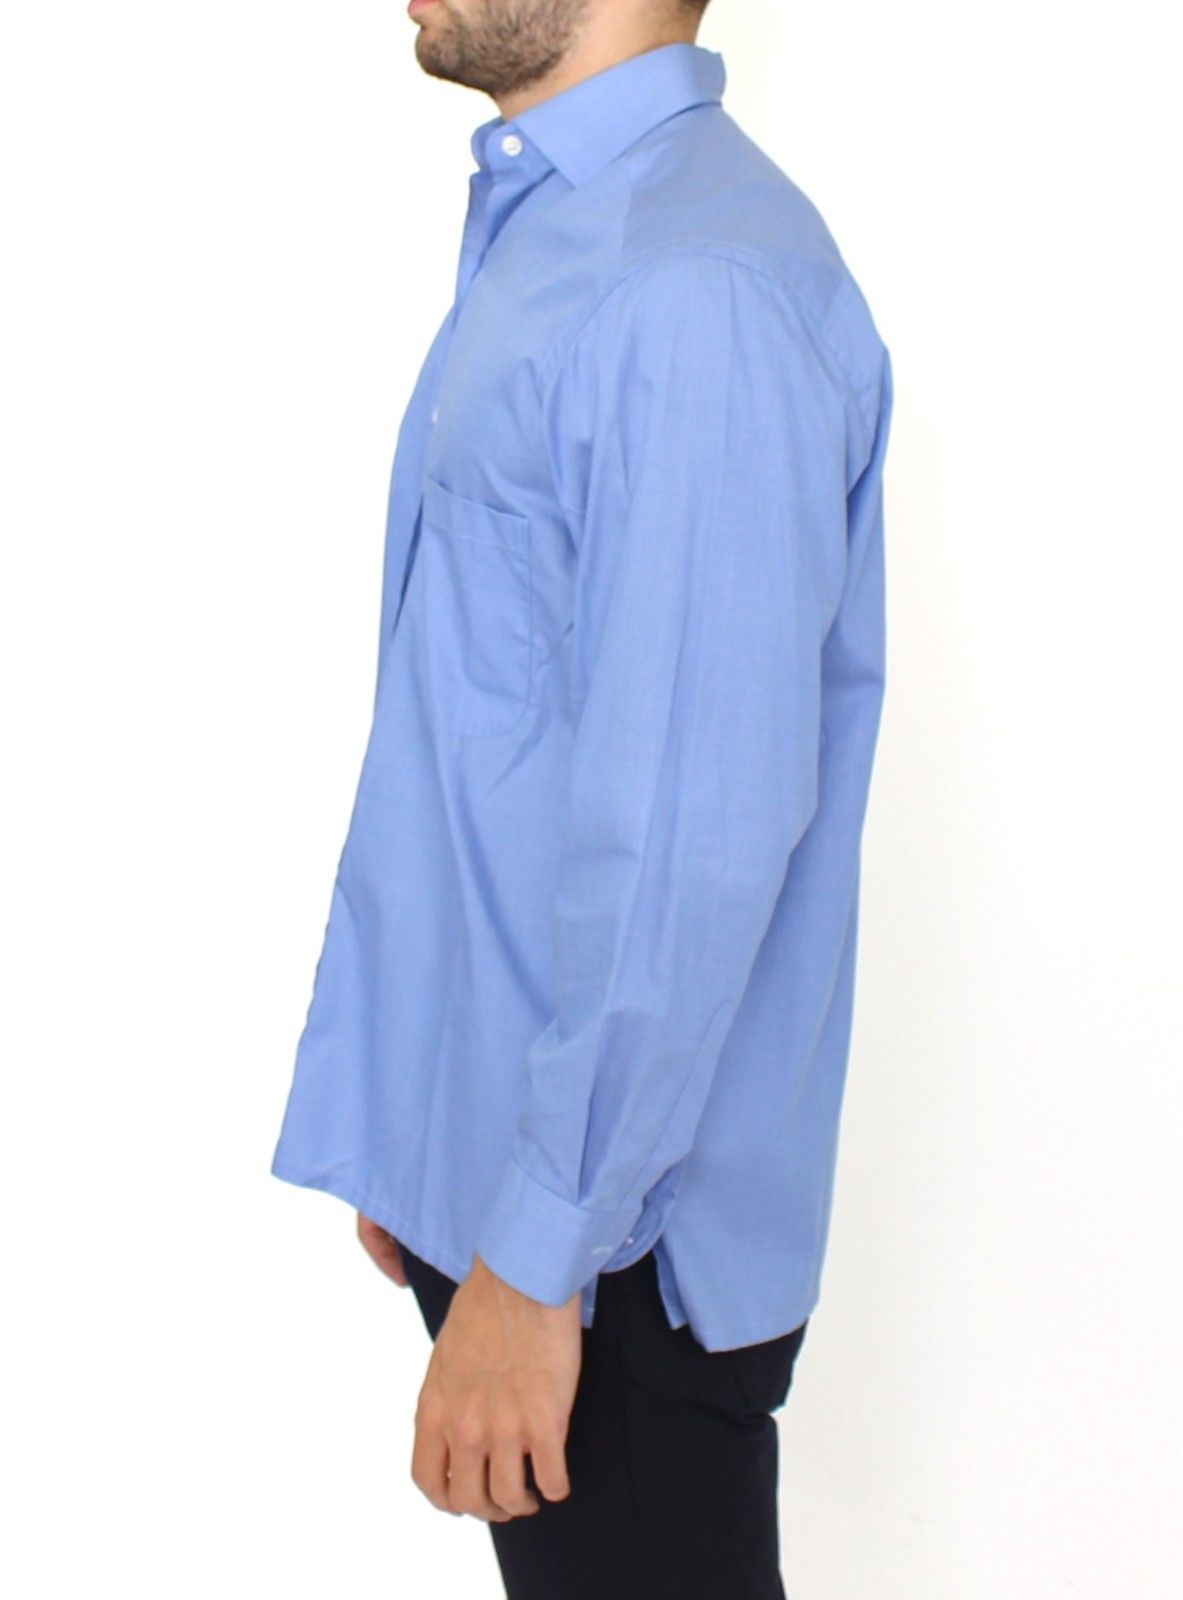 Ermanno Scervino Blue Cotton Dress Classic Fit Shirt